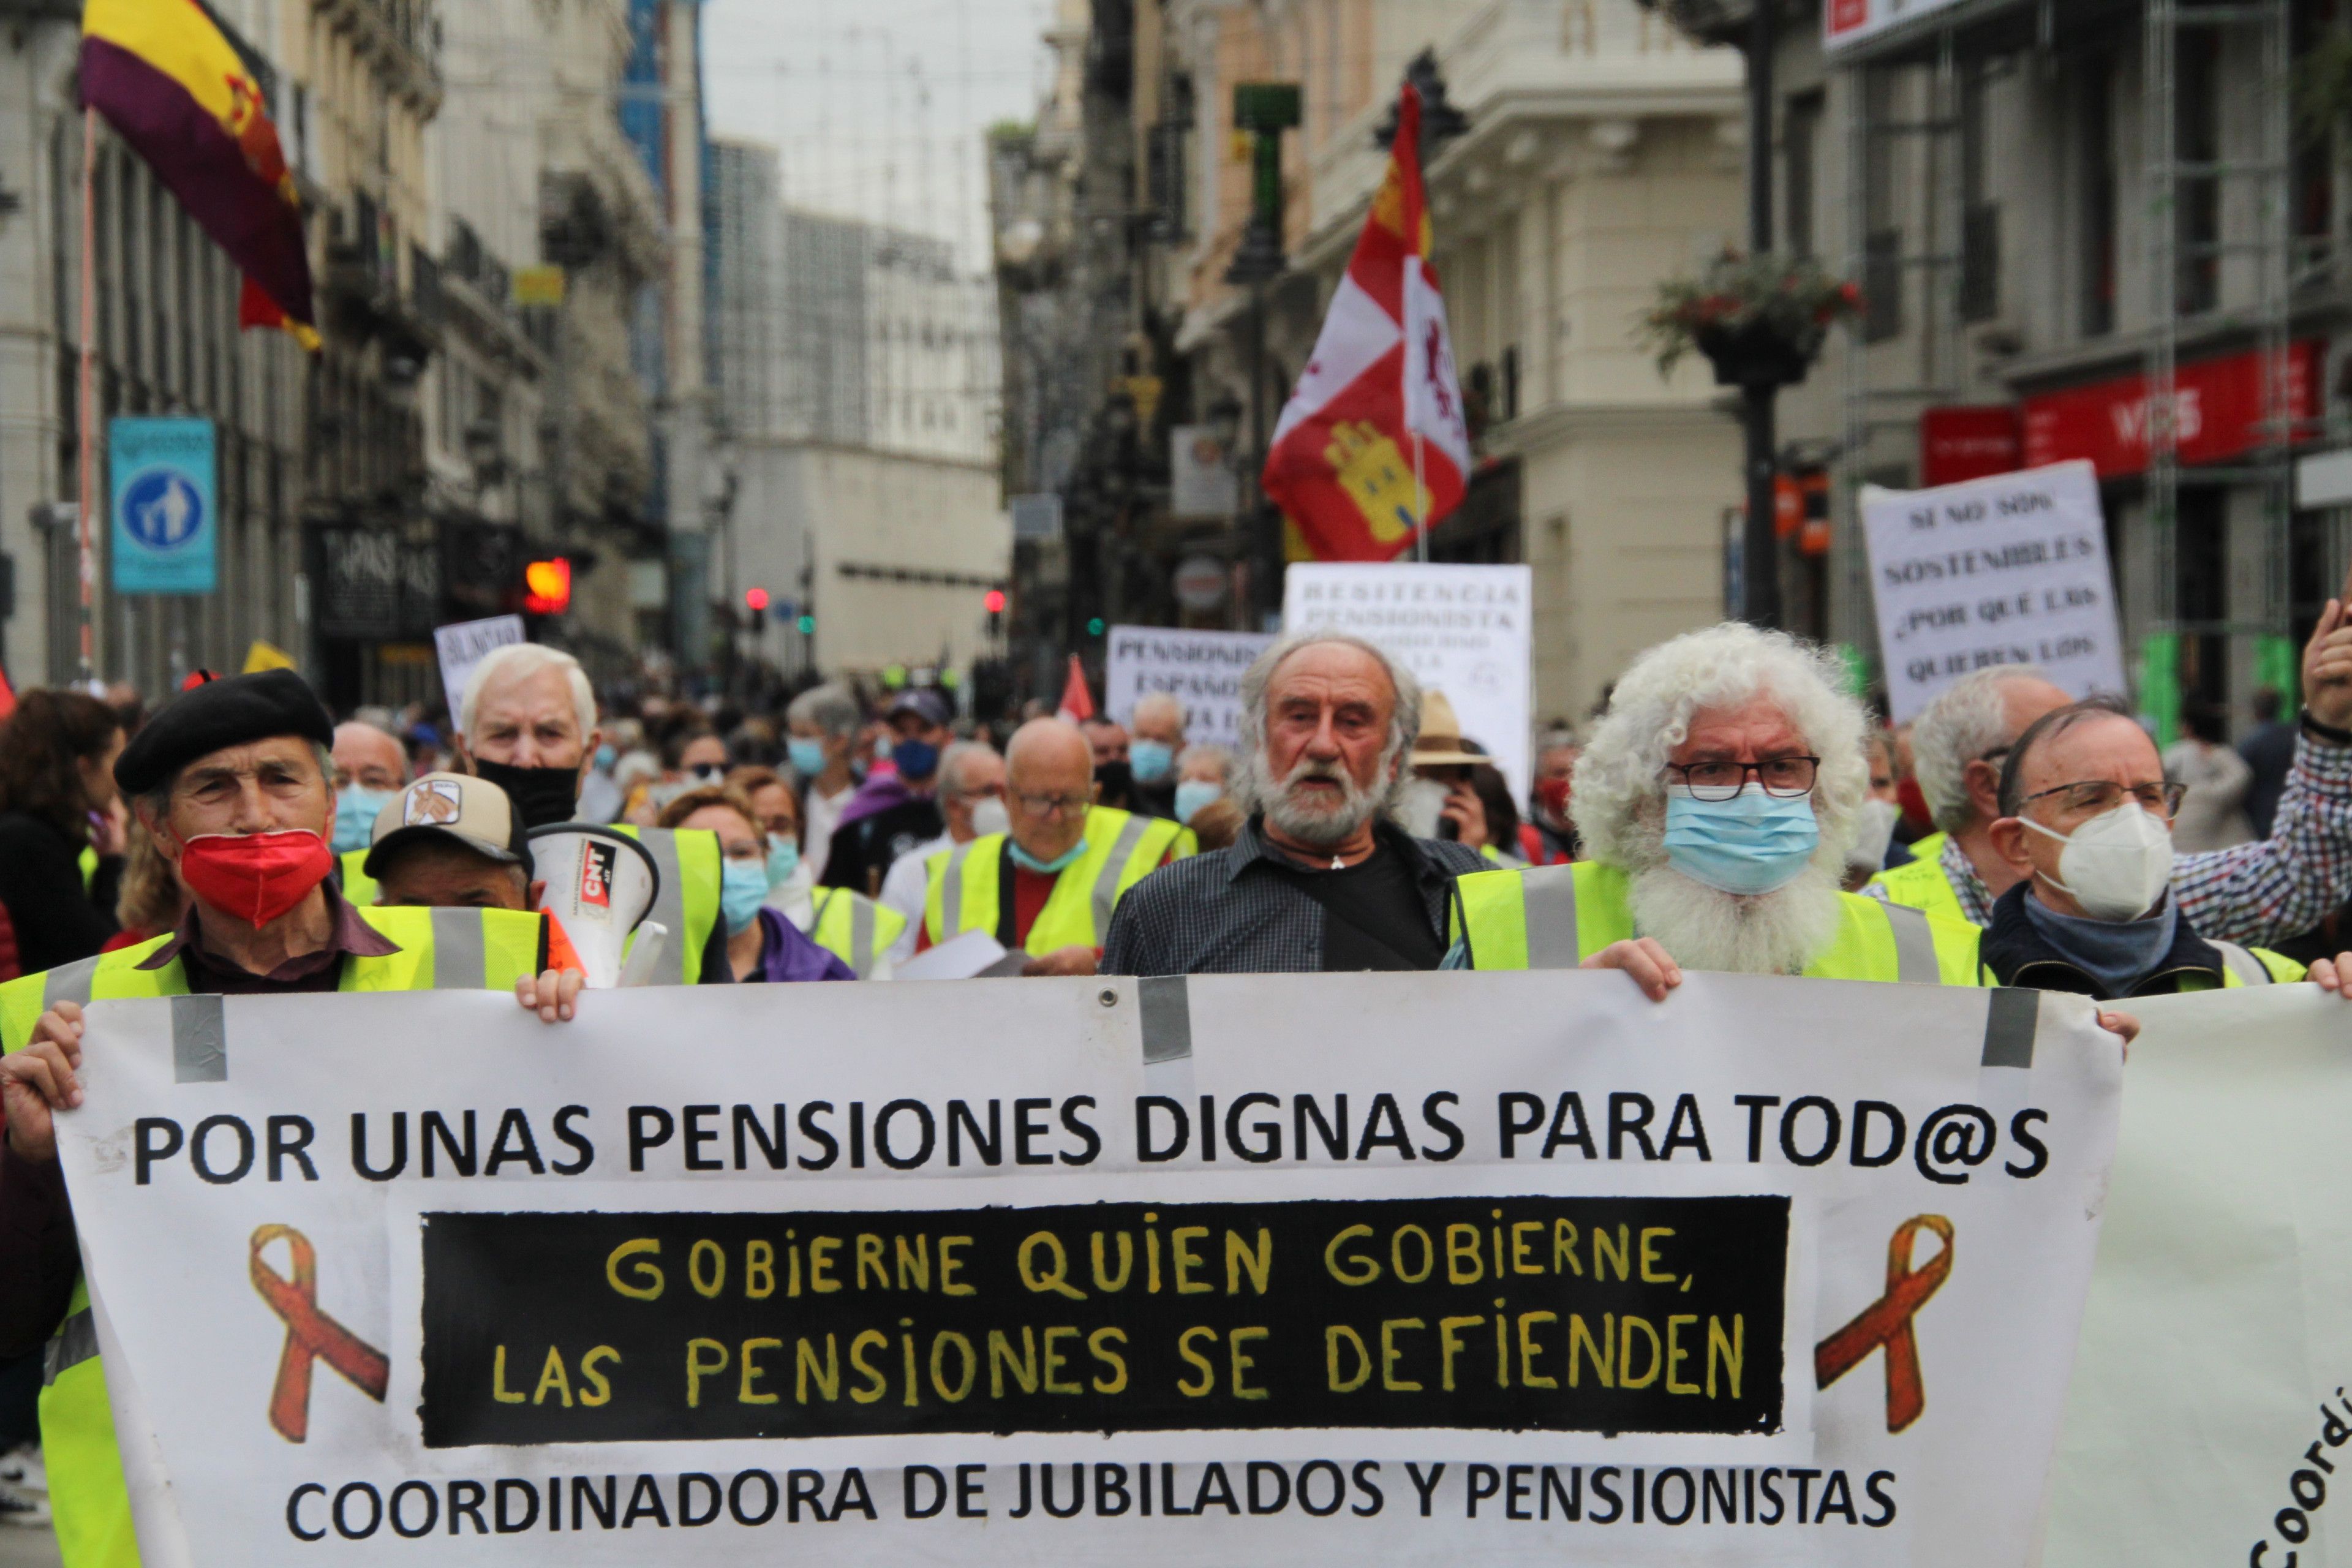 Los pensionistas, "indignados", piden una auditoría de la Seguridad Social y la dimisión de Escrivá